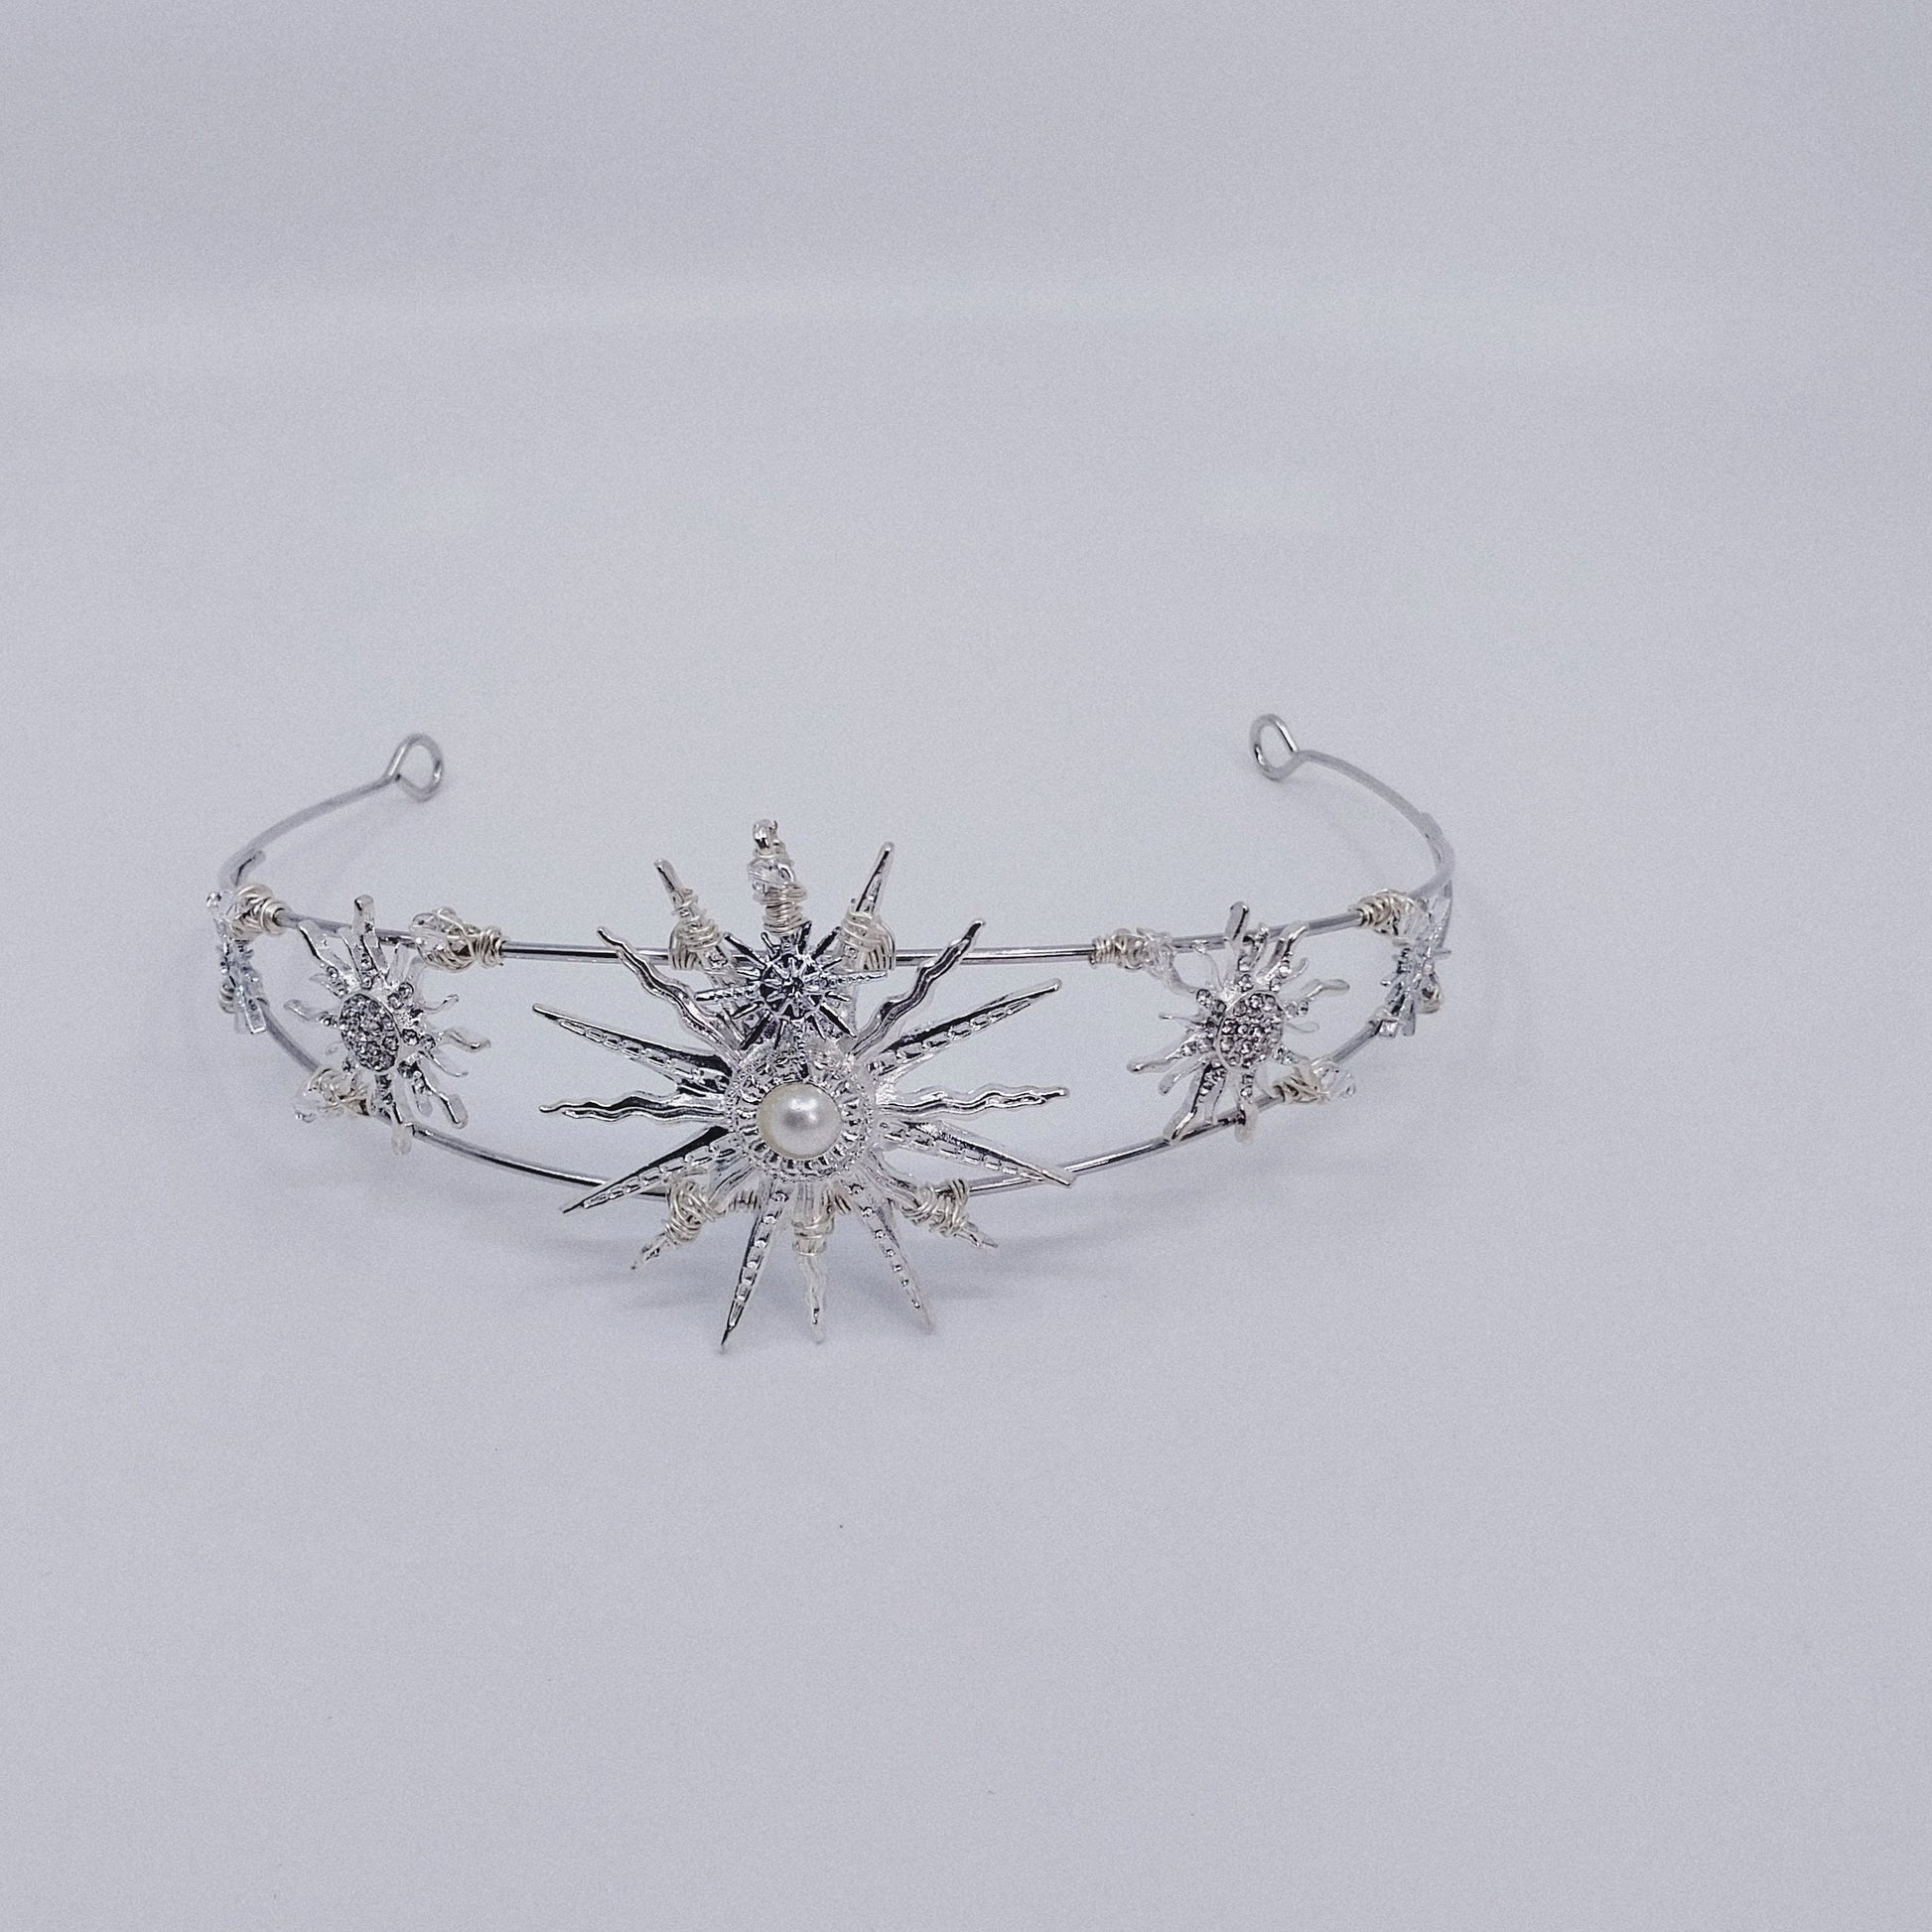 SOLEIL Tiara handmade celestial hair accessories moon and star headpiece Australia